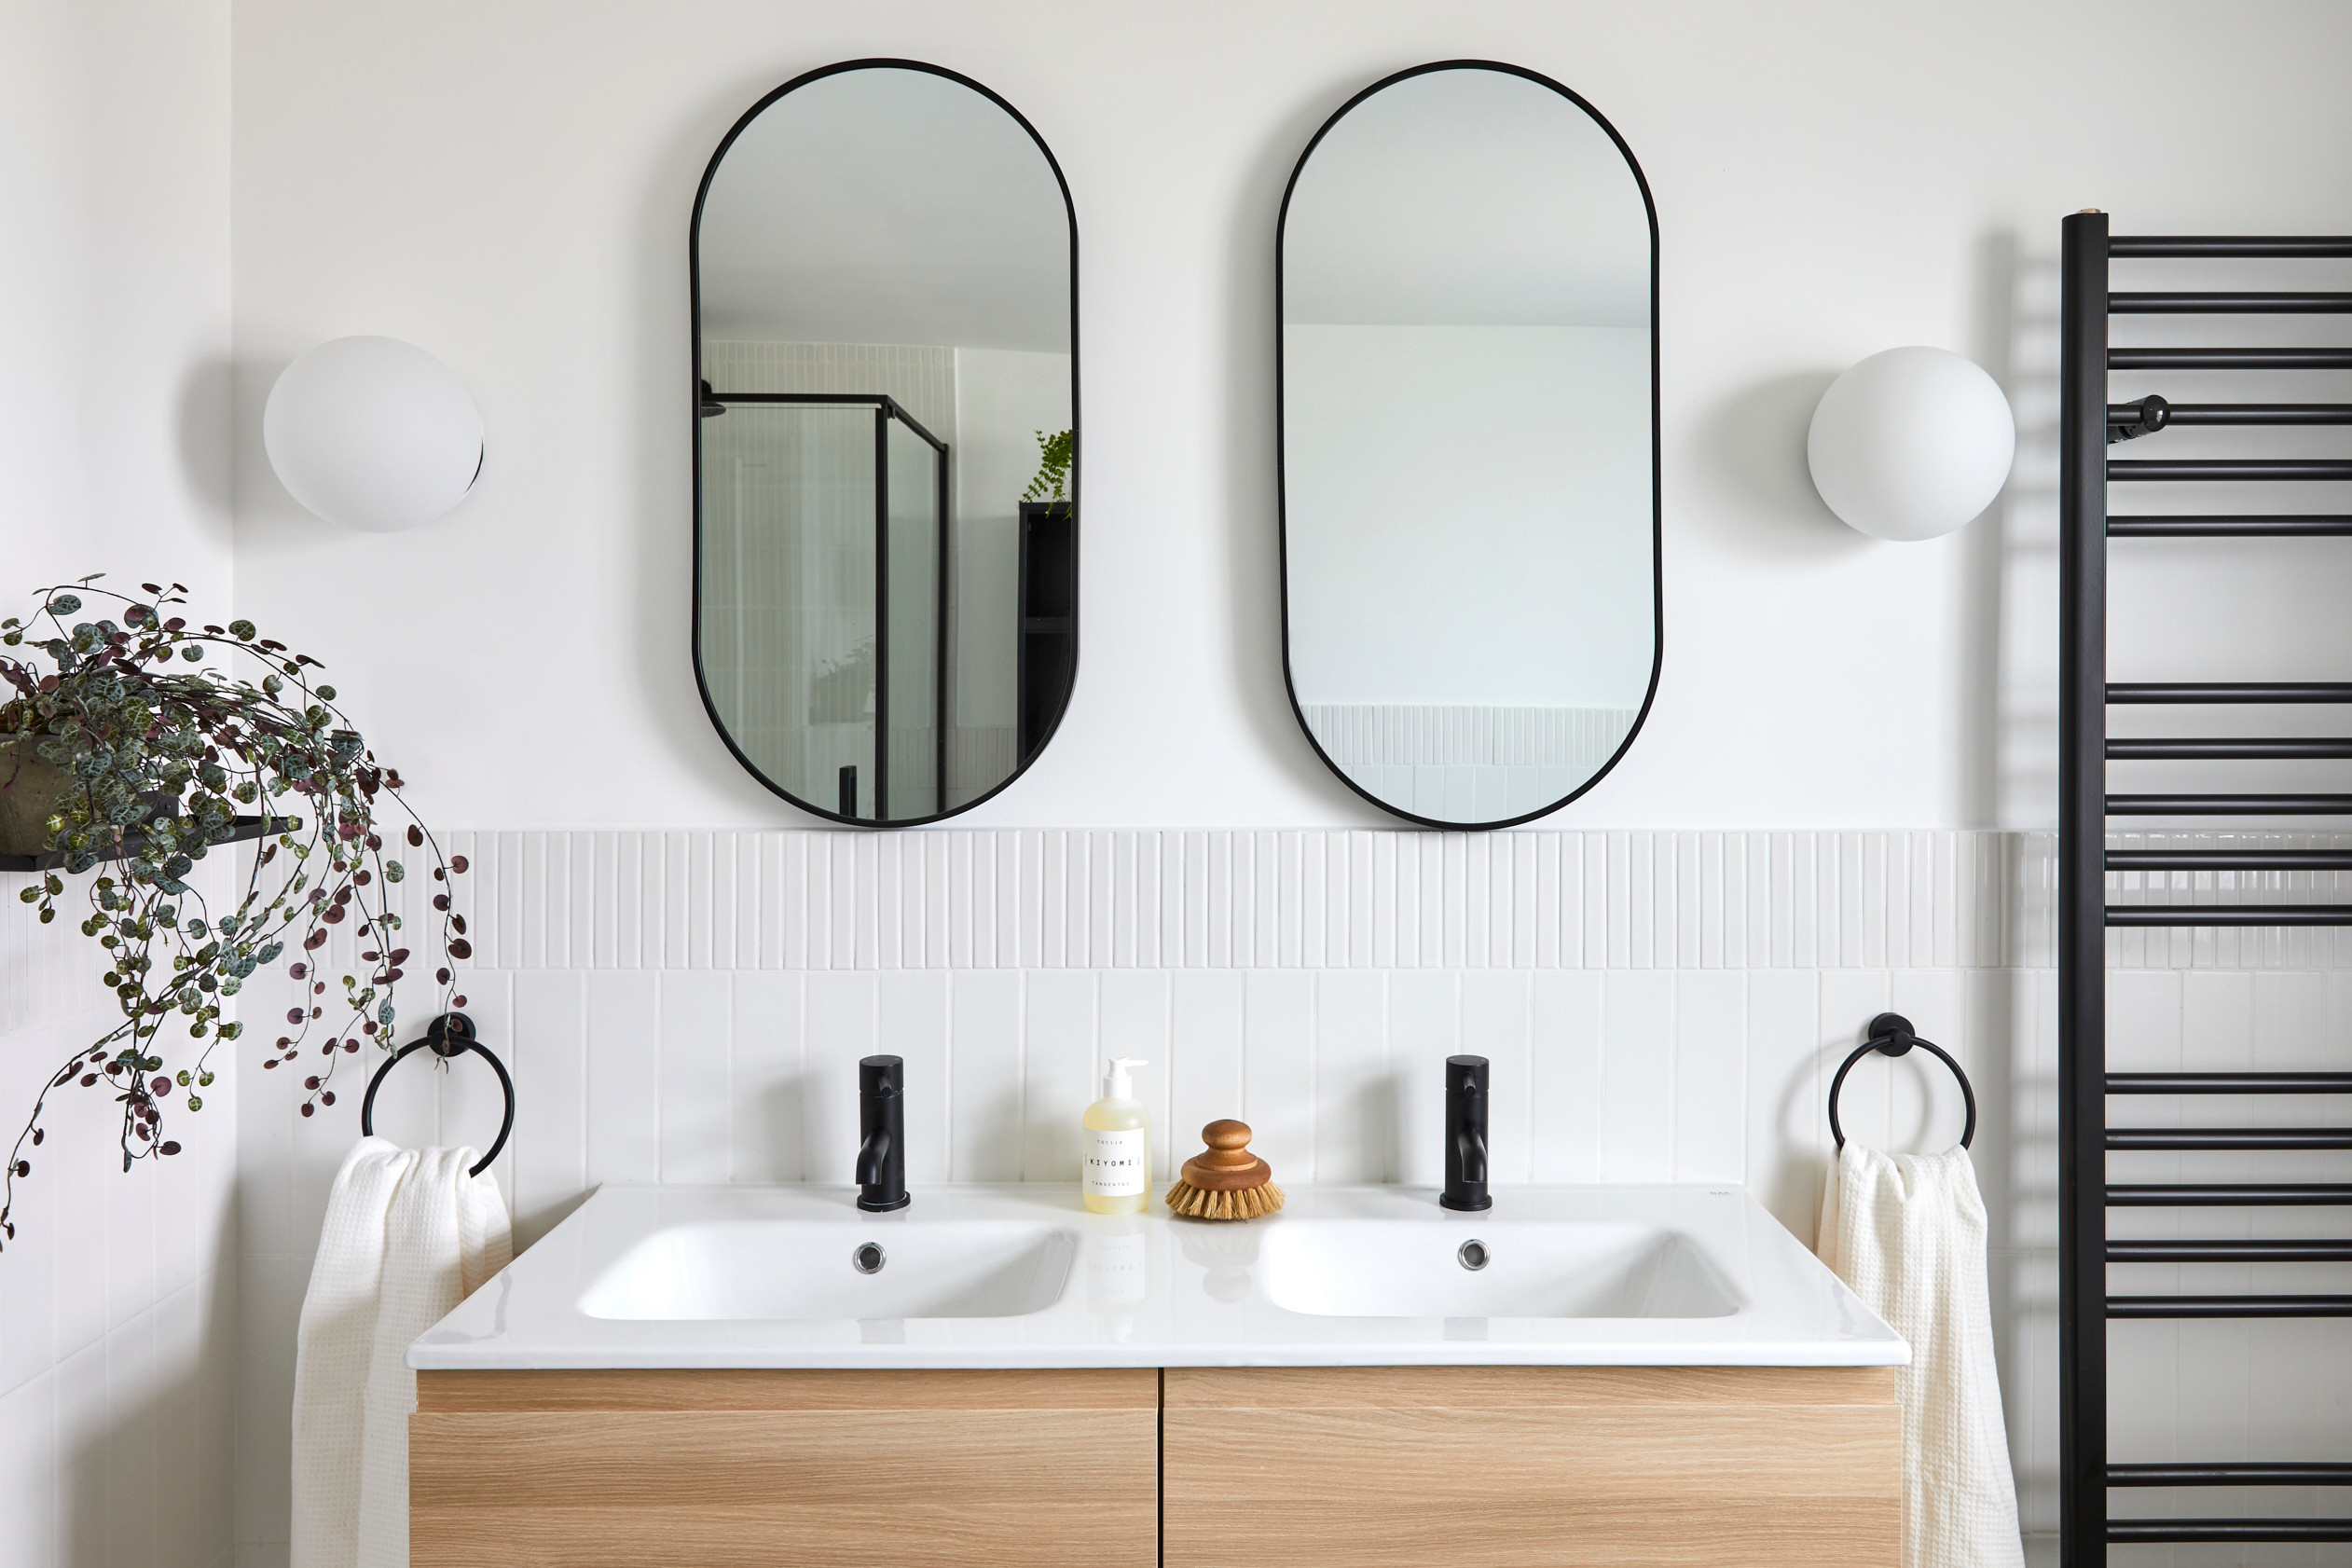 Scandinavian-Inspired Bathroom Design Tips for Serenity